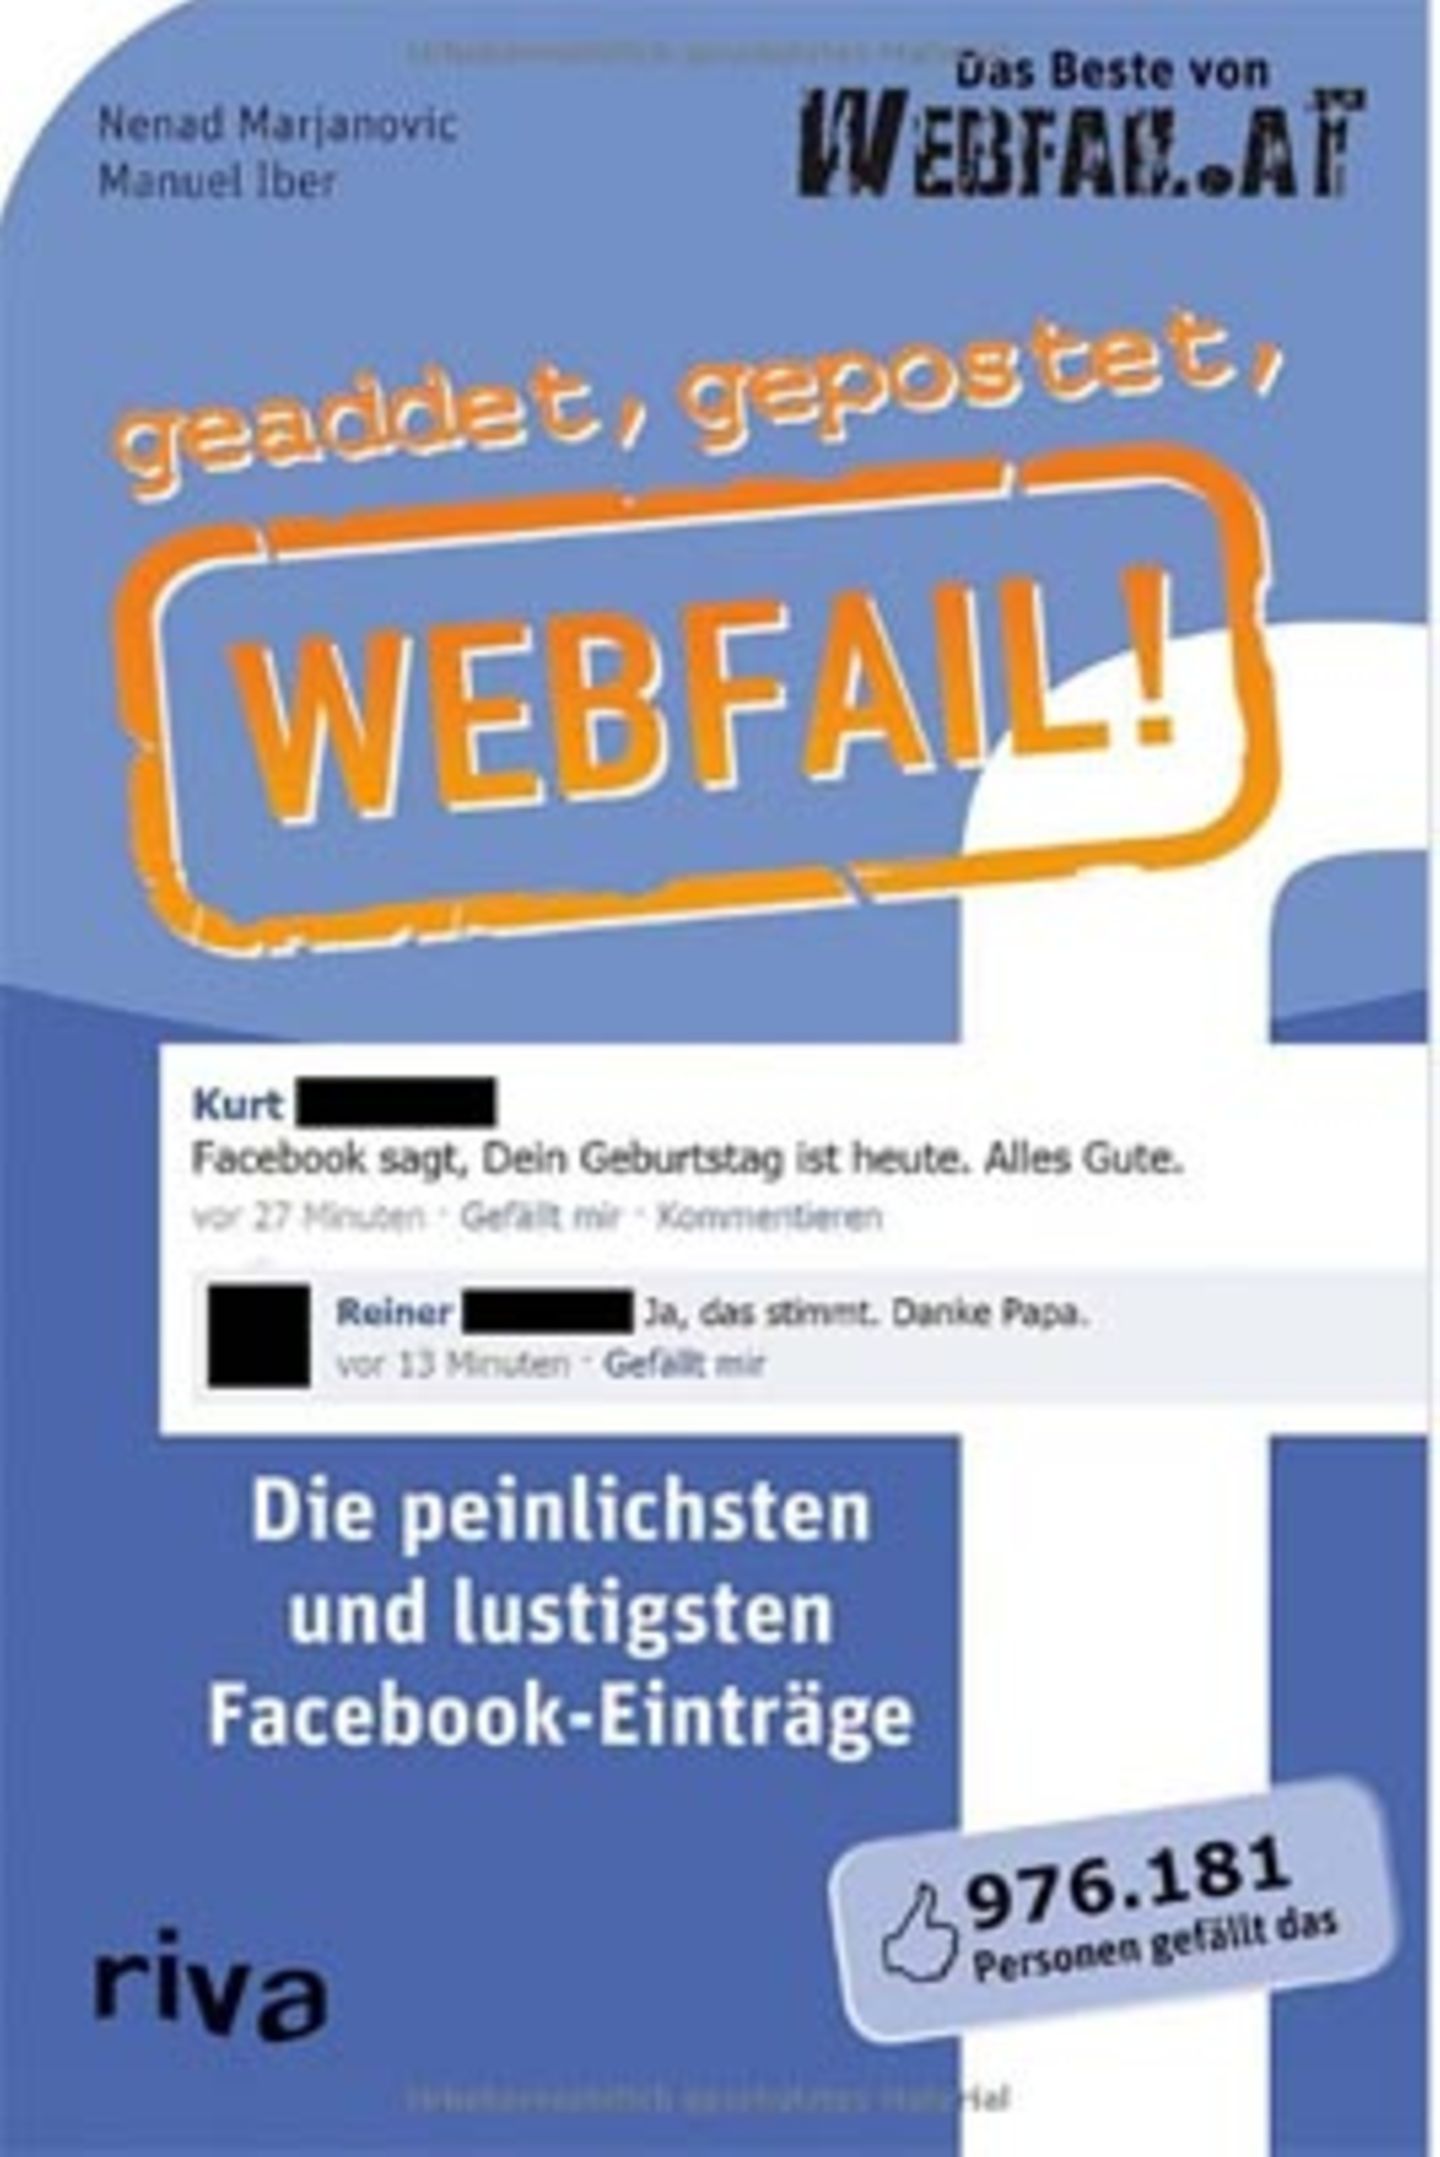 Nenad Marjanovic, Manuel Iber: "geadded, gepostet, Webfail! Die peinlichsten und lustigsten Facebook-Einträge", riva Verlag, 8,99 Euro